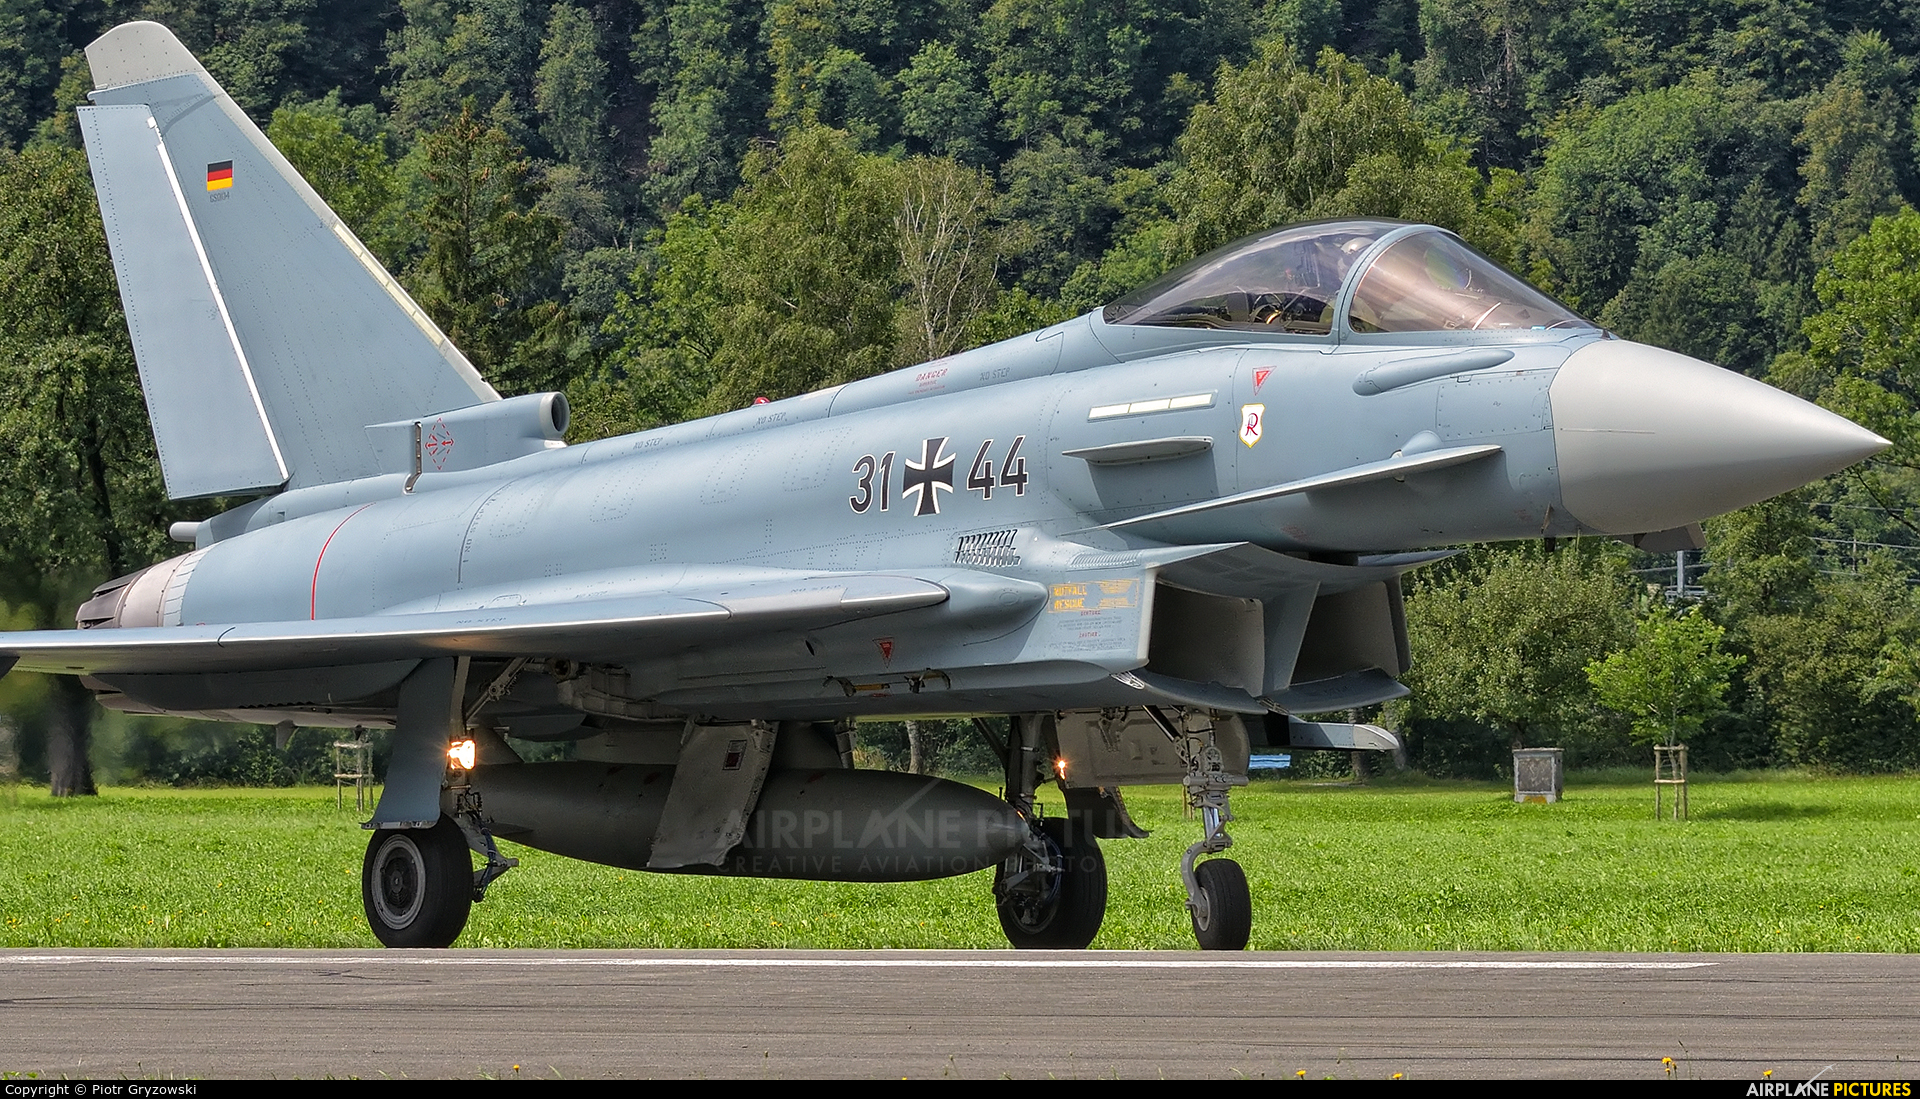 Germany - Air Force 31+44 aircraft at Mollis